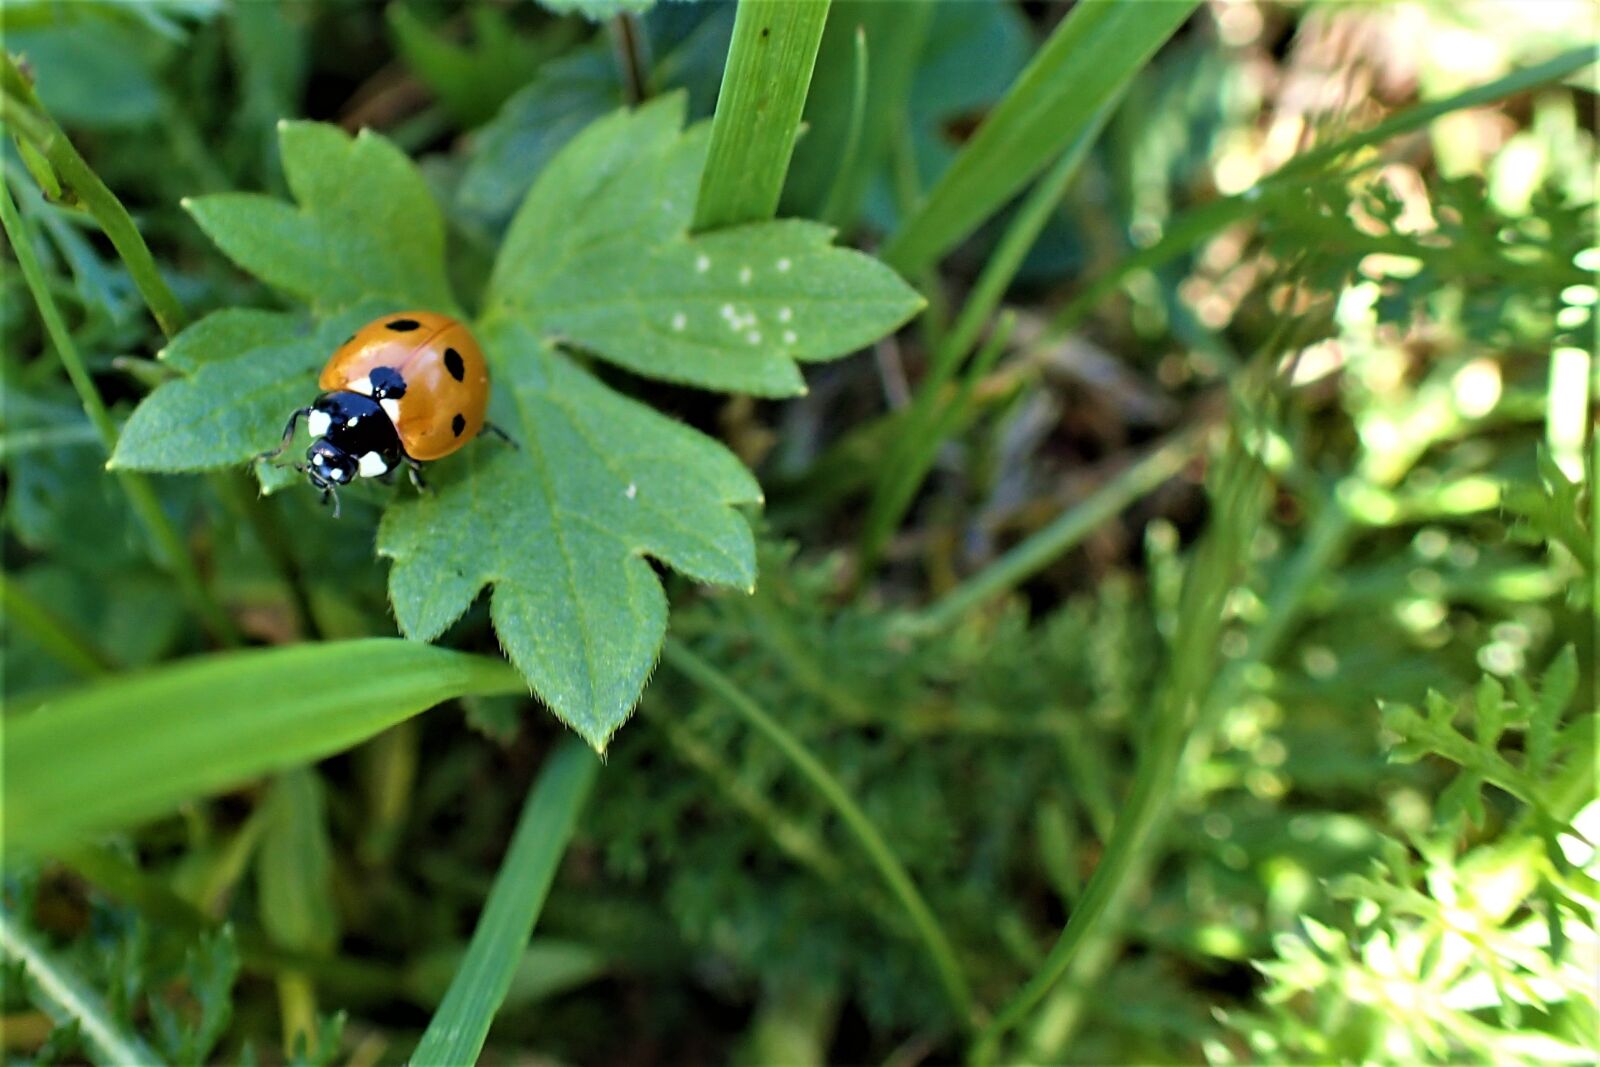 Olympus TG-4 sample photo. Ladybug, green, leaf photography